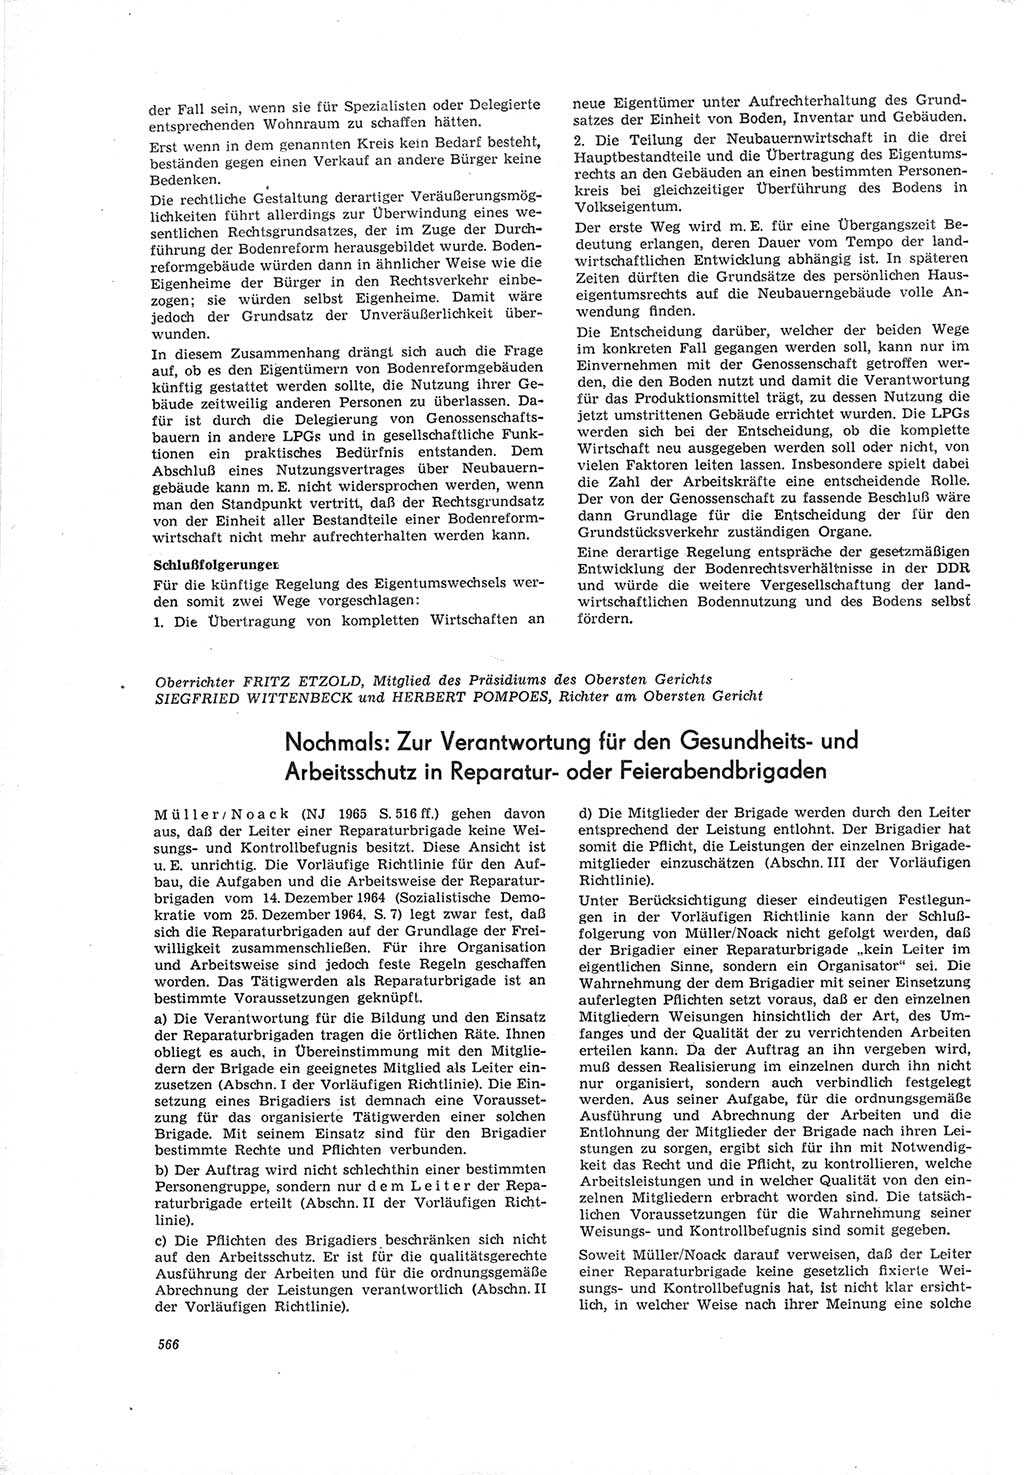 Neue Justiz (NJ), Zeitschrift für Recht und Rechtswissenschaft [Deutsche Demokratische Republik (DDR)], 19. Jahrgang 1965, Seite 566 (NJ DDR 1965, S. 566)